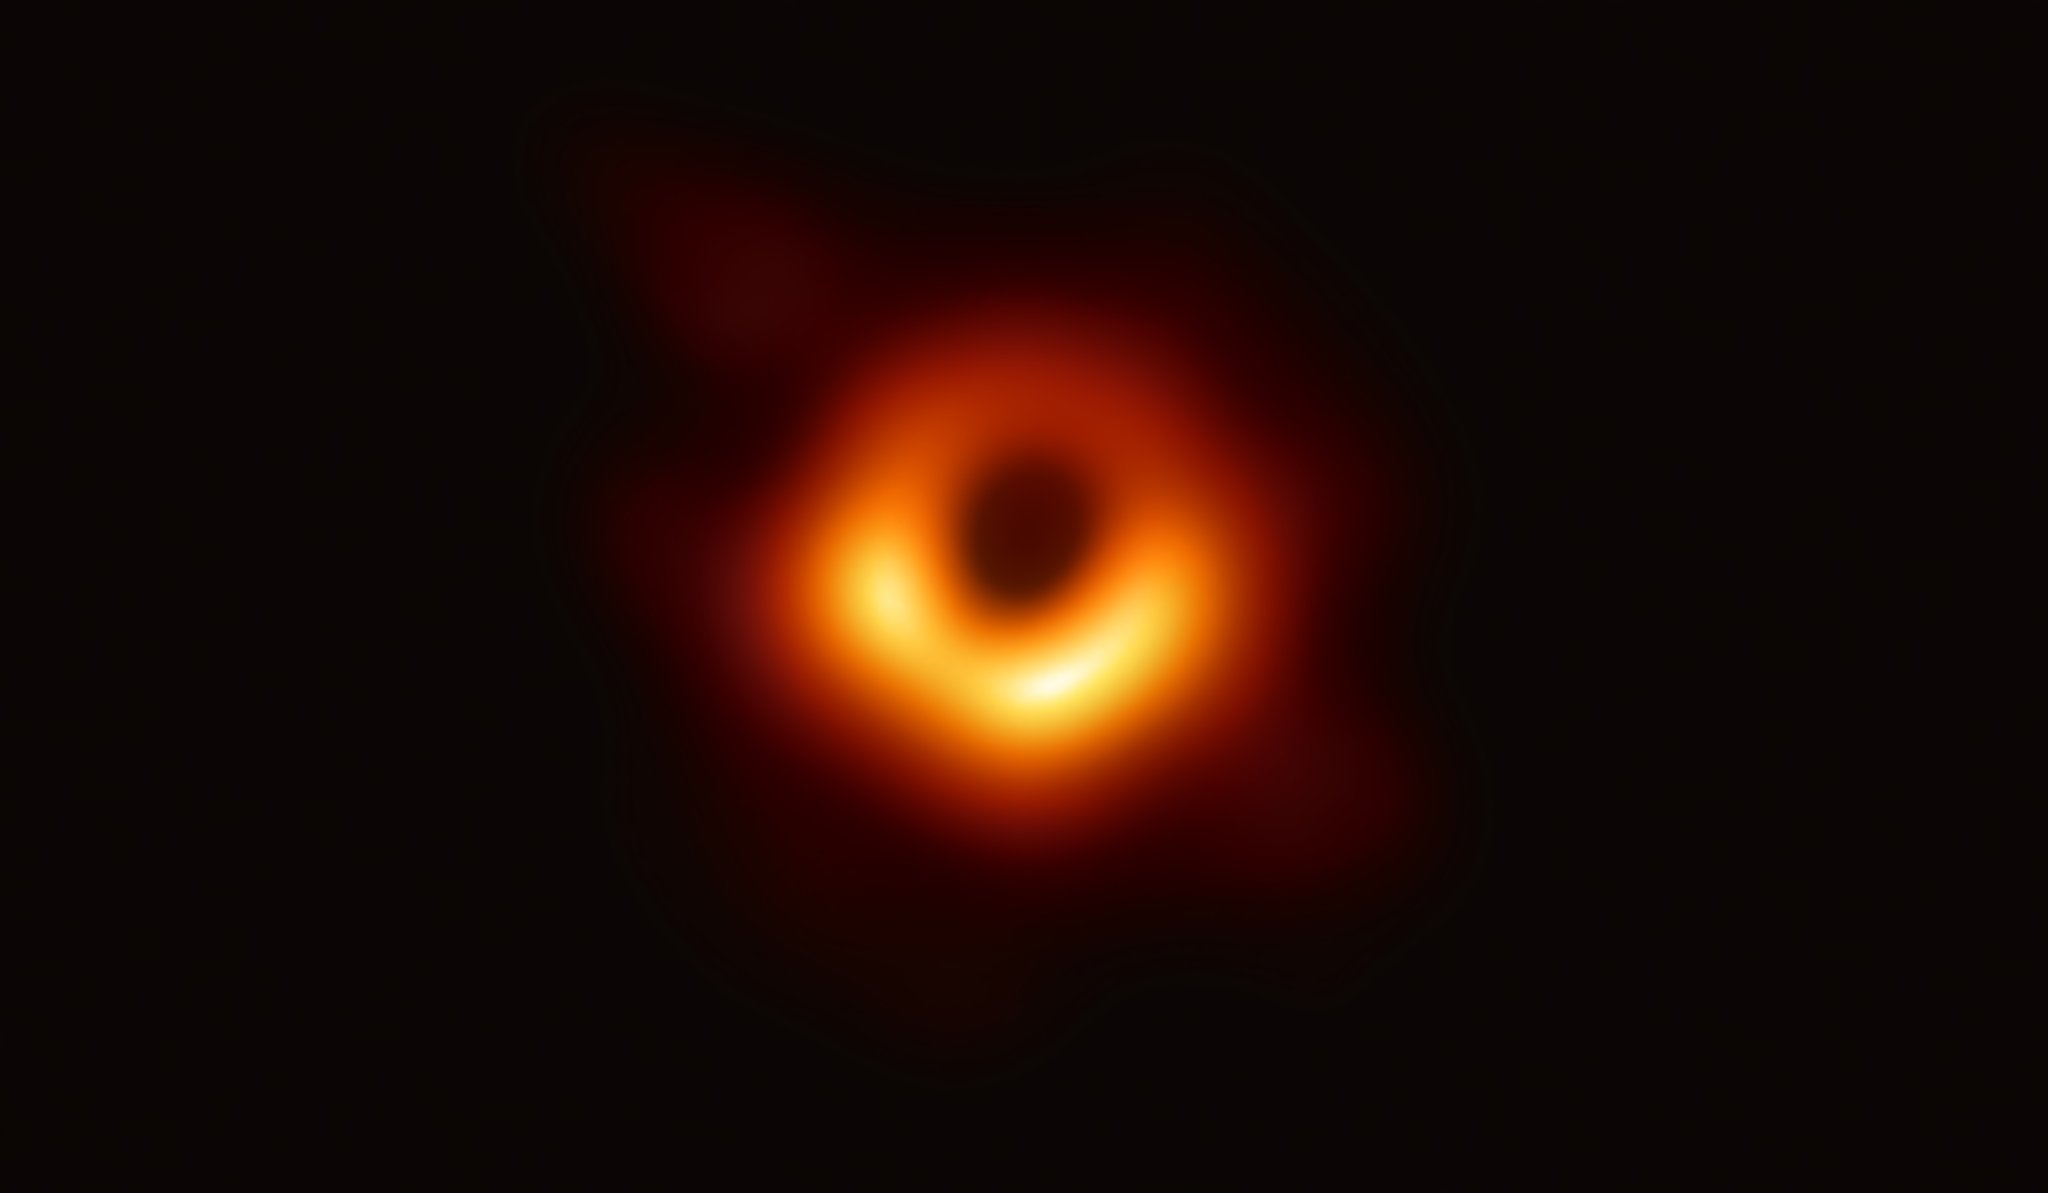 ilk kara delik fotoğrafı sagittarius a astronomi